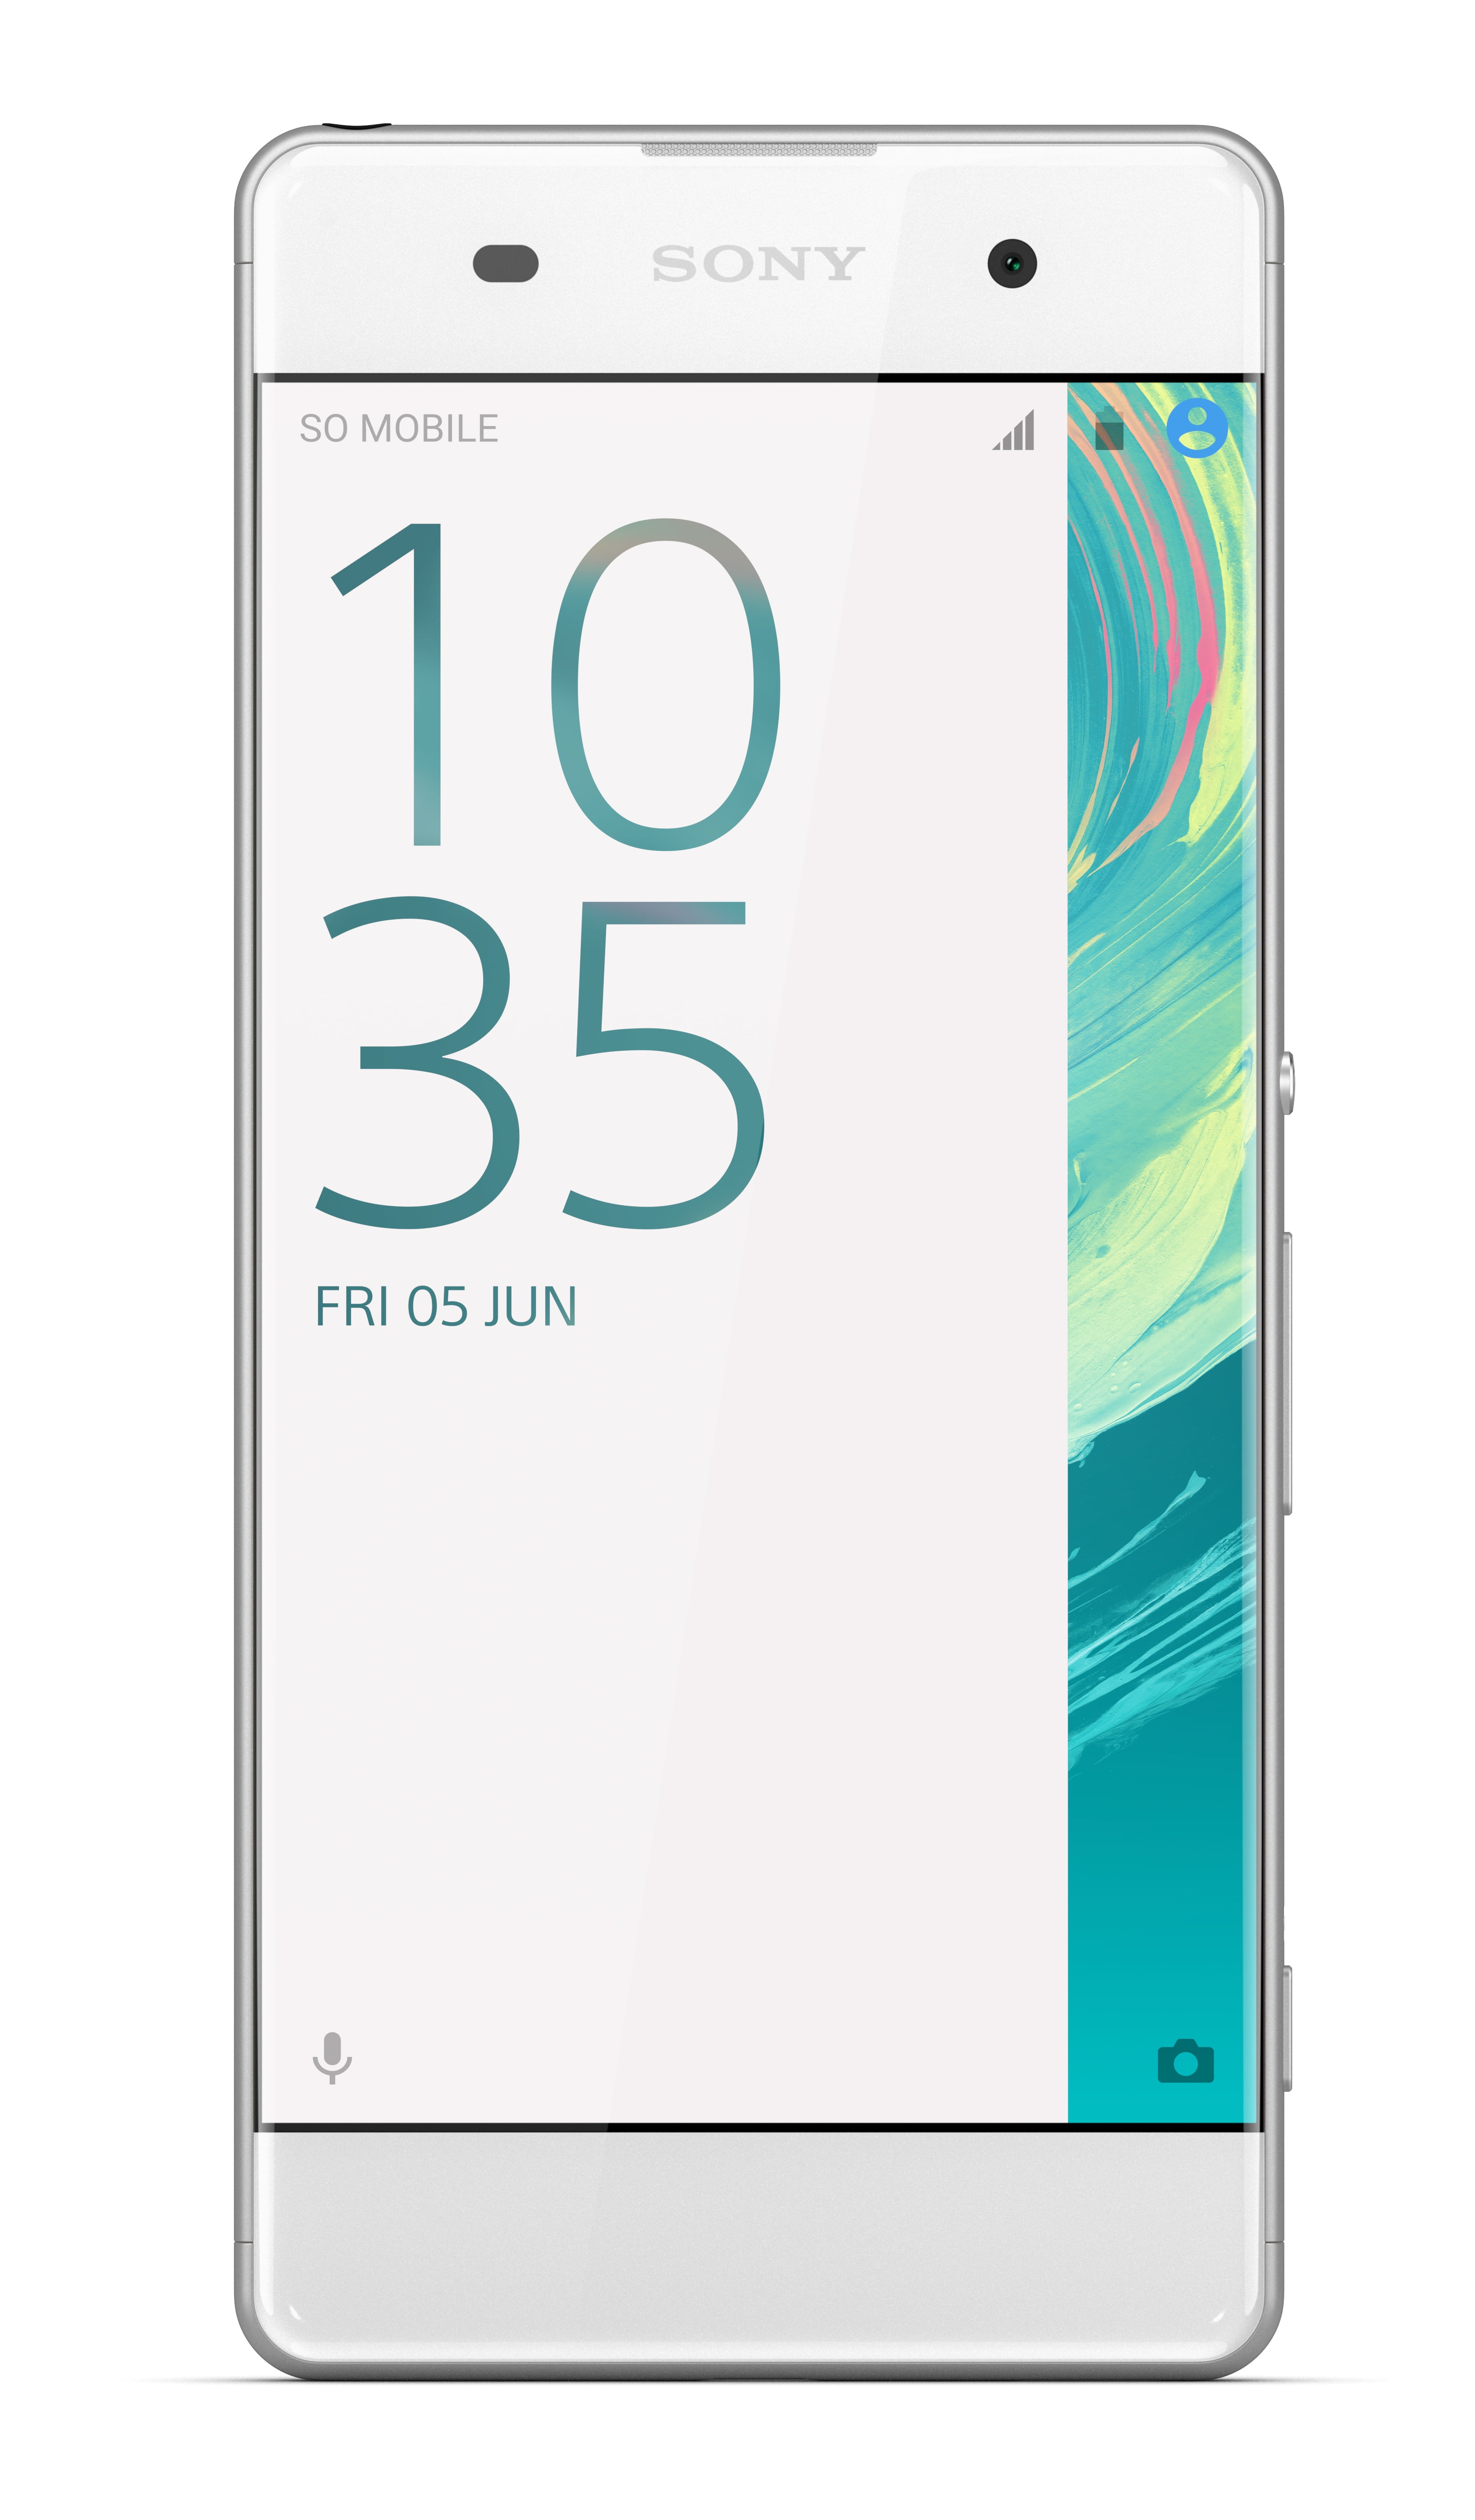 isolatie hetzelfde krokodil Sony Xperia XA F3113 16GB GSM Android v6.0 Phone - White - Walmart.com